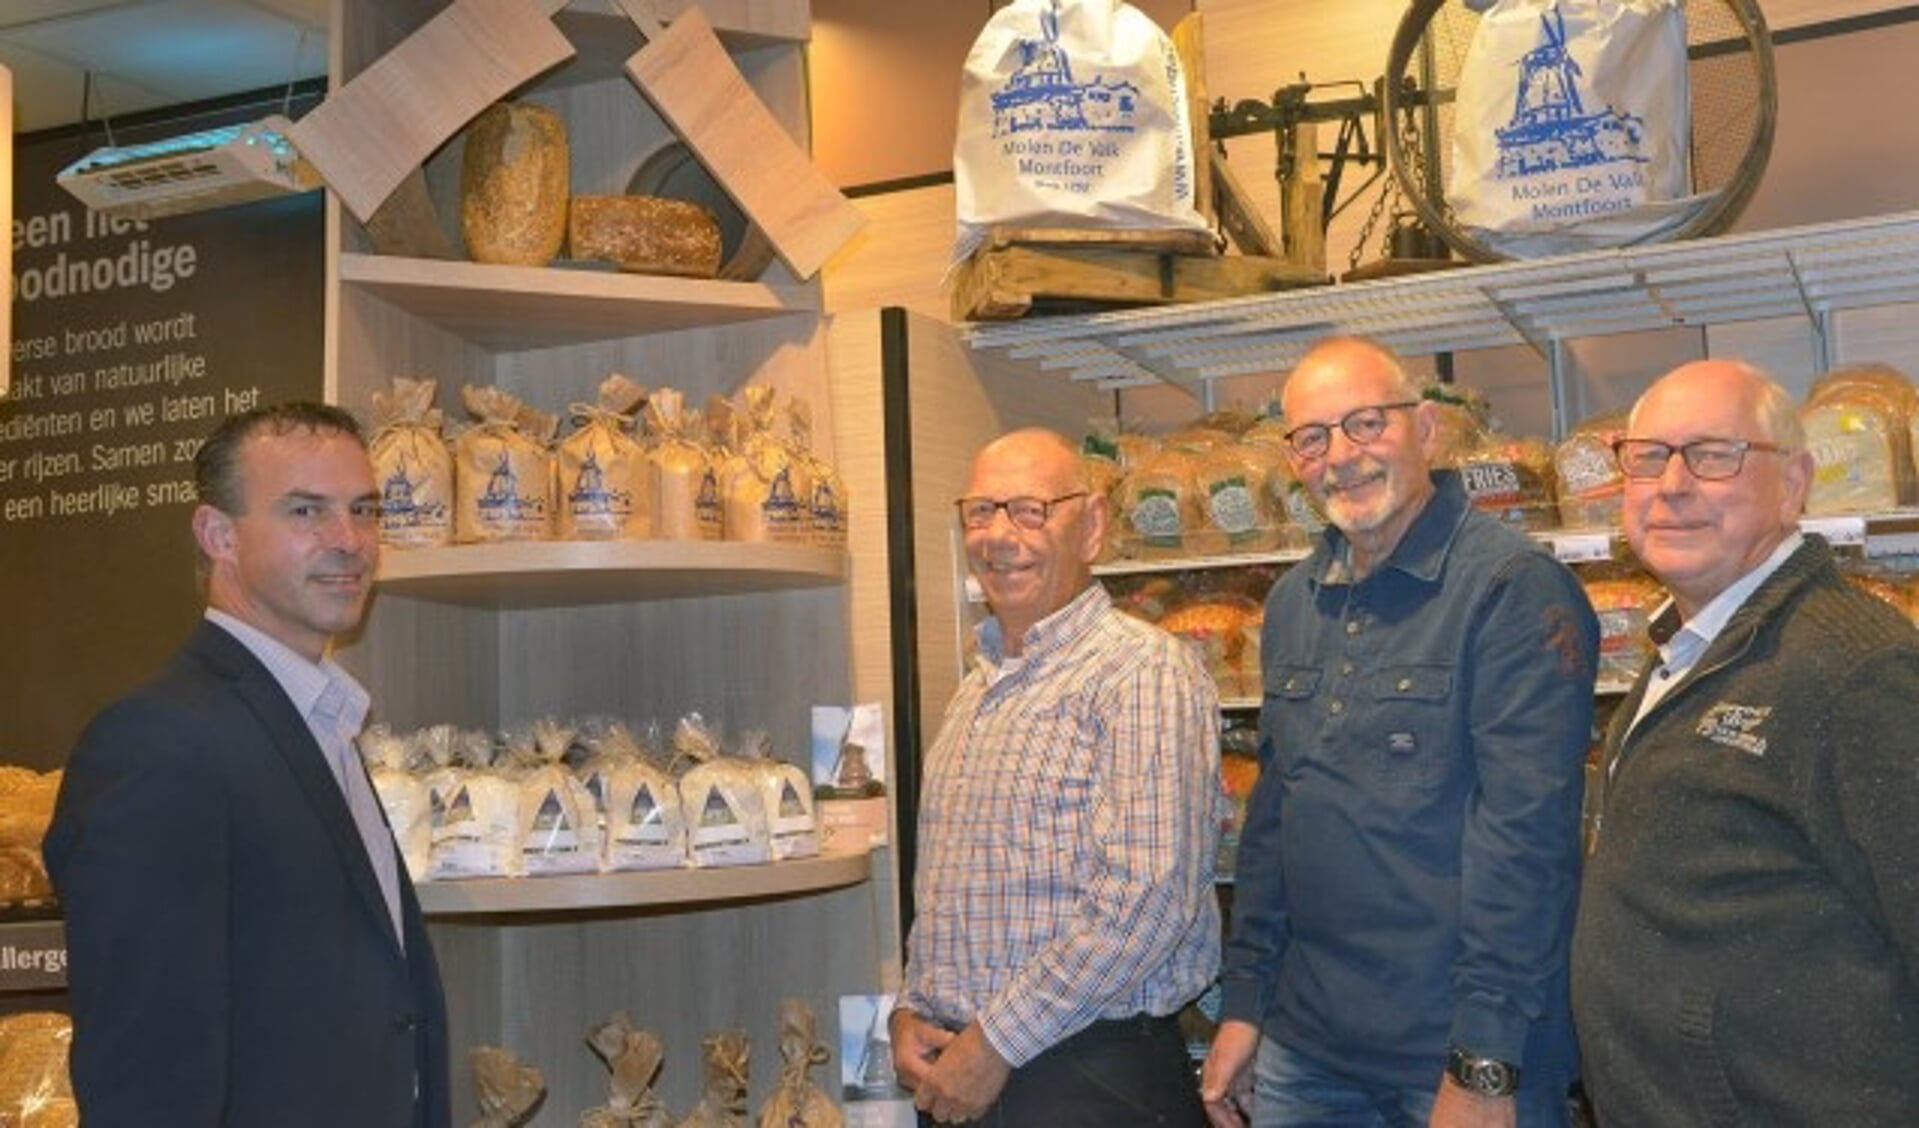 Wilco Versluis van de Albert Heijn, Hans van Domselaar, molenaar Henk Visser en Kees Birkhoff van molen De Valk bij de uitgestalde producten.